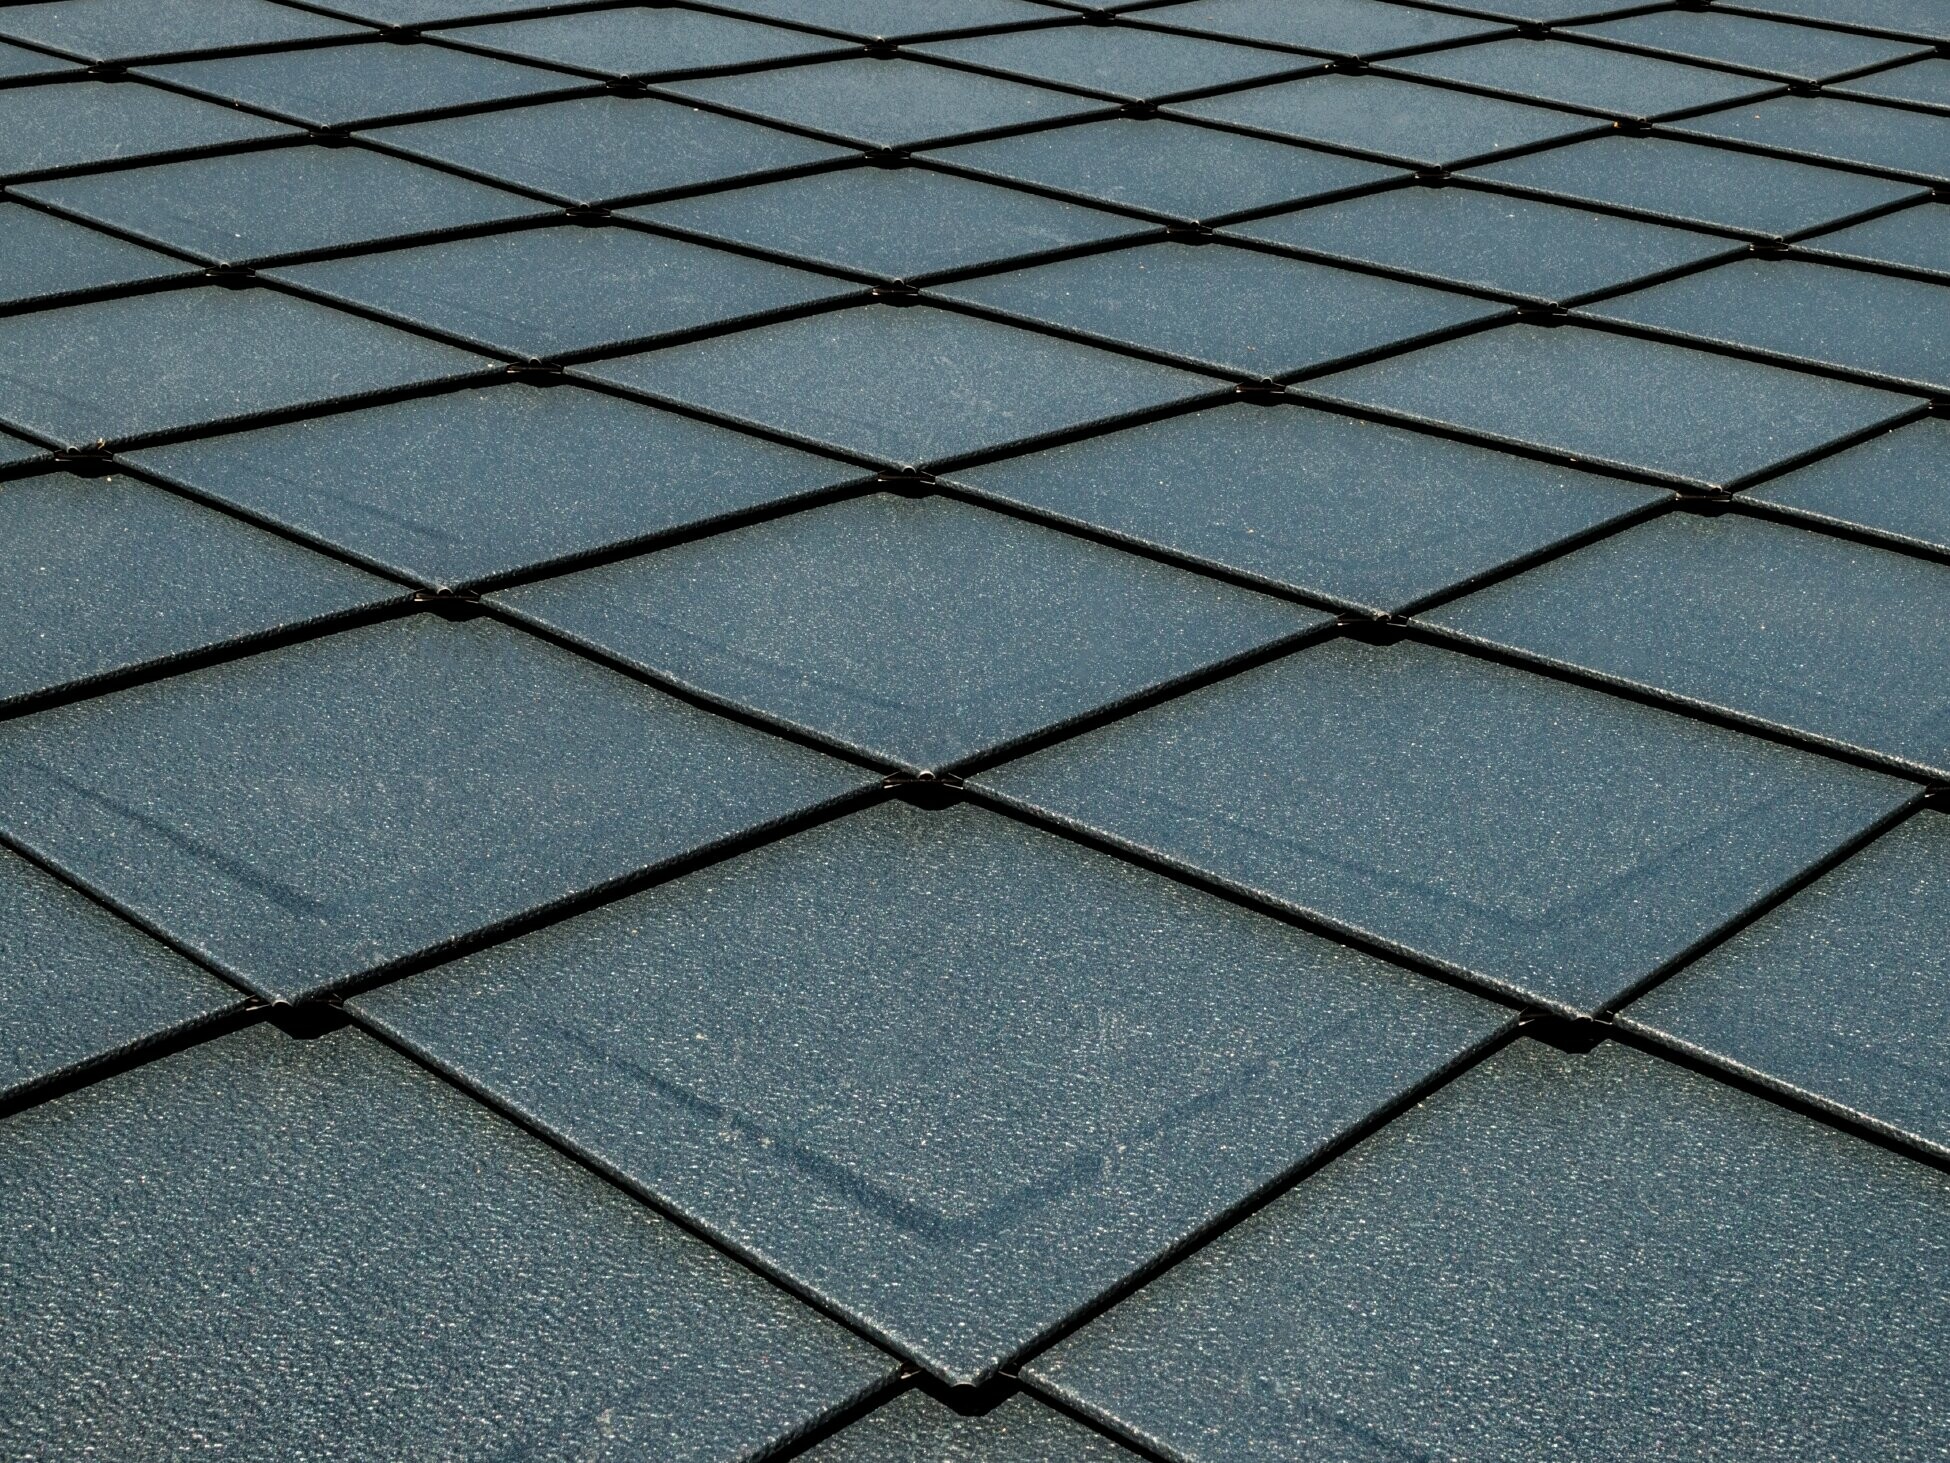 PREFA daklosange 29 × 29 in P.10 antraciet met reliëf (dimple), dak met schubbenlook